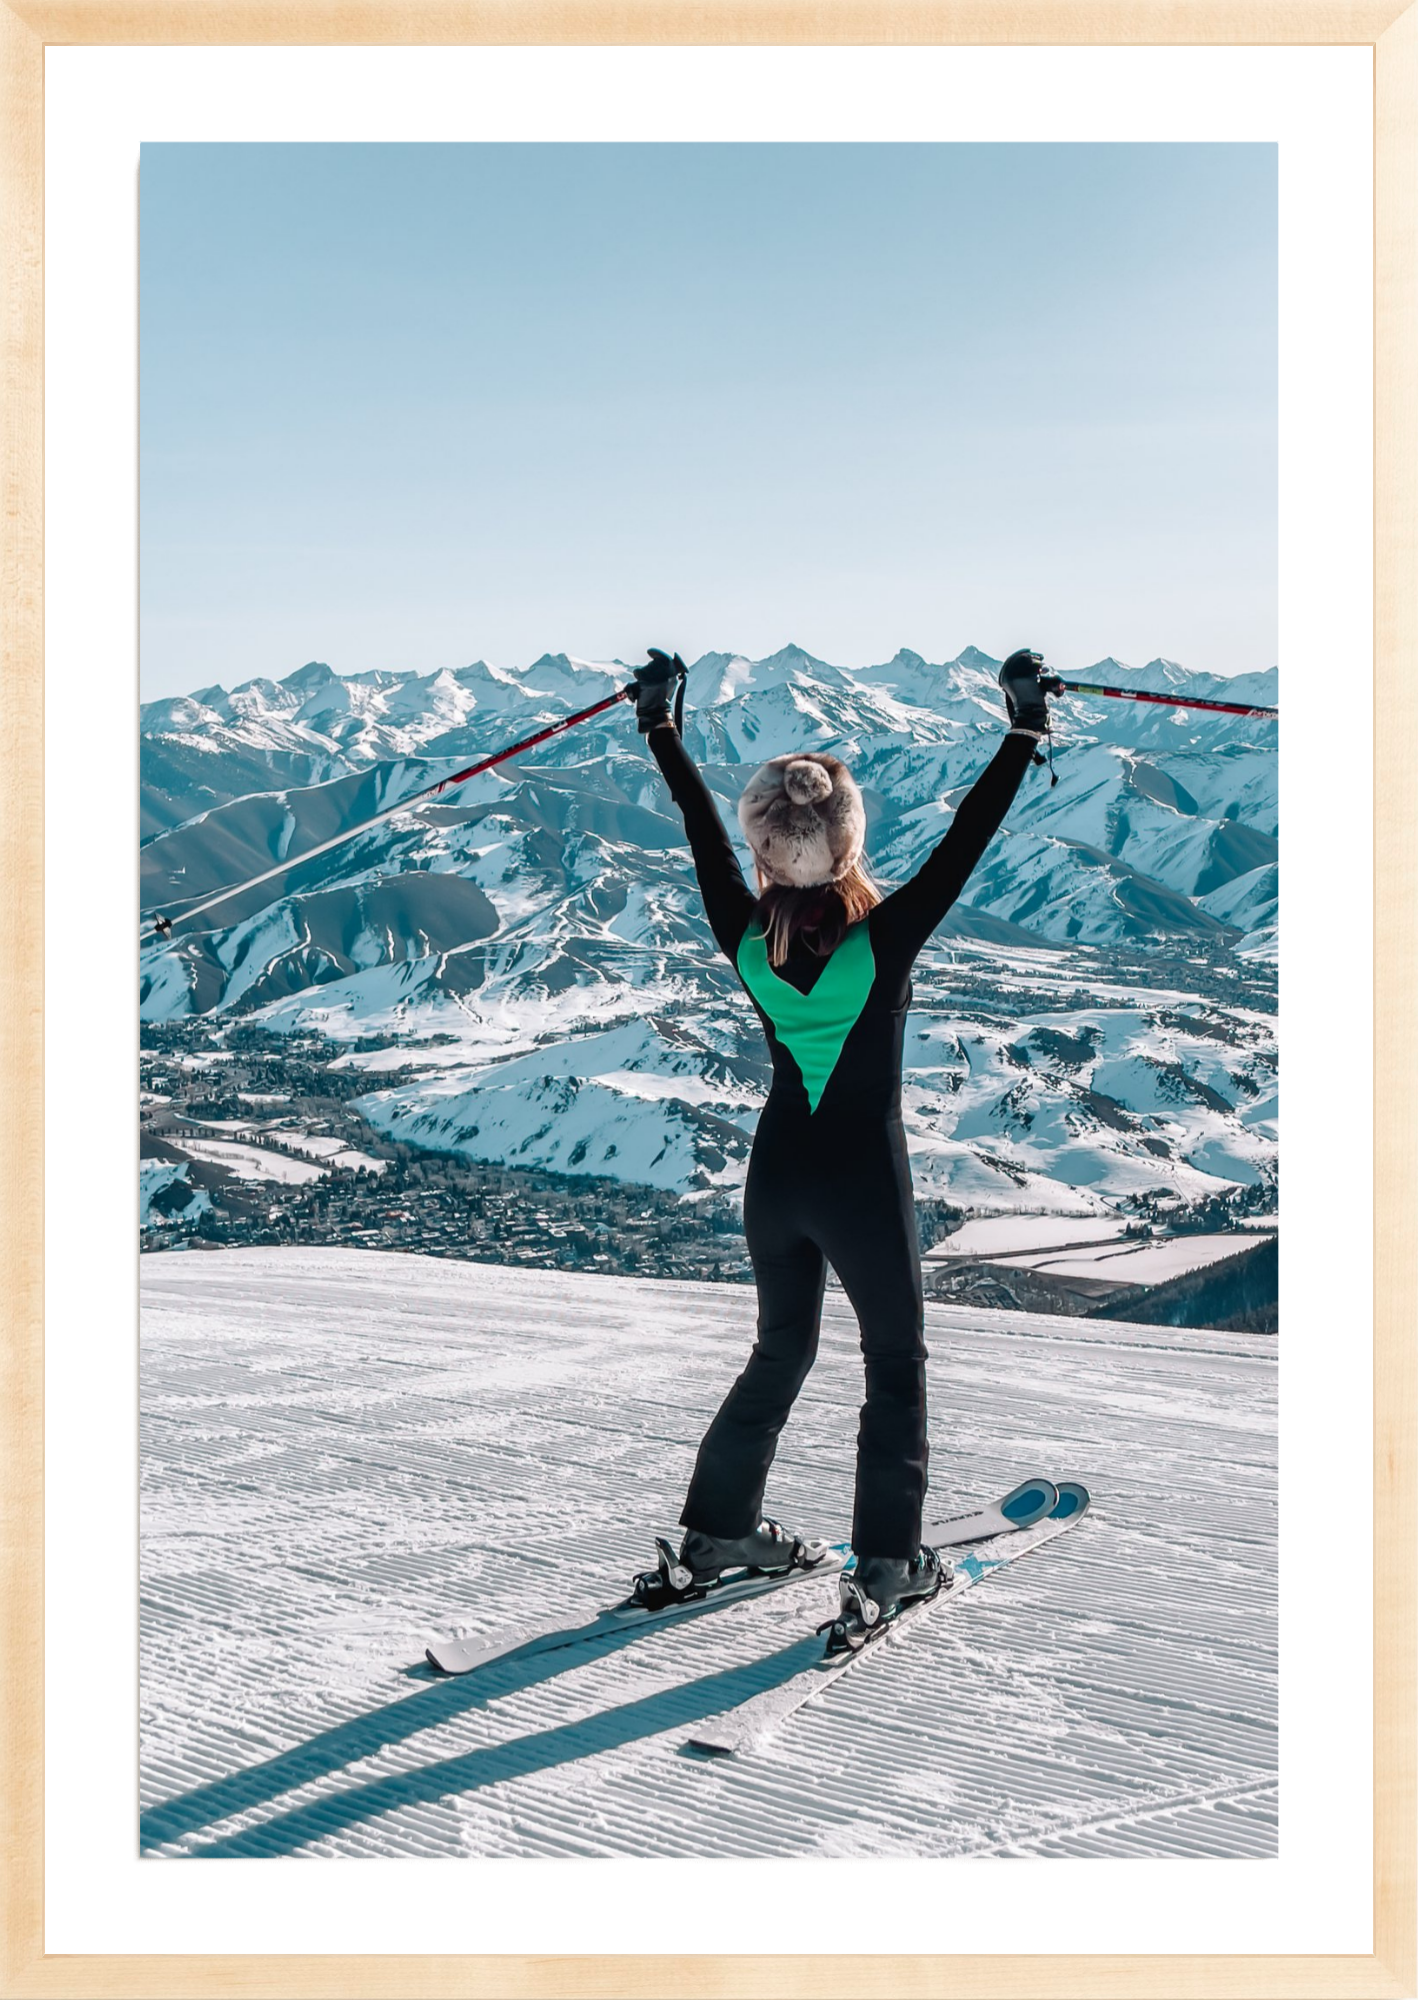 Apres Art Ski Dreams Fine | Decor Champagne